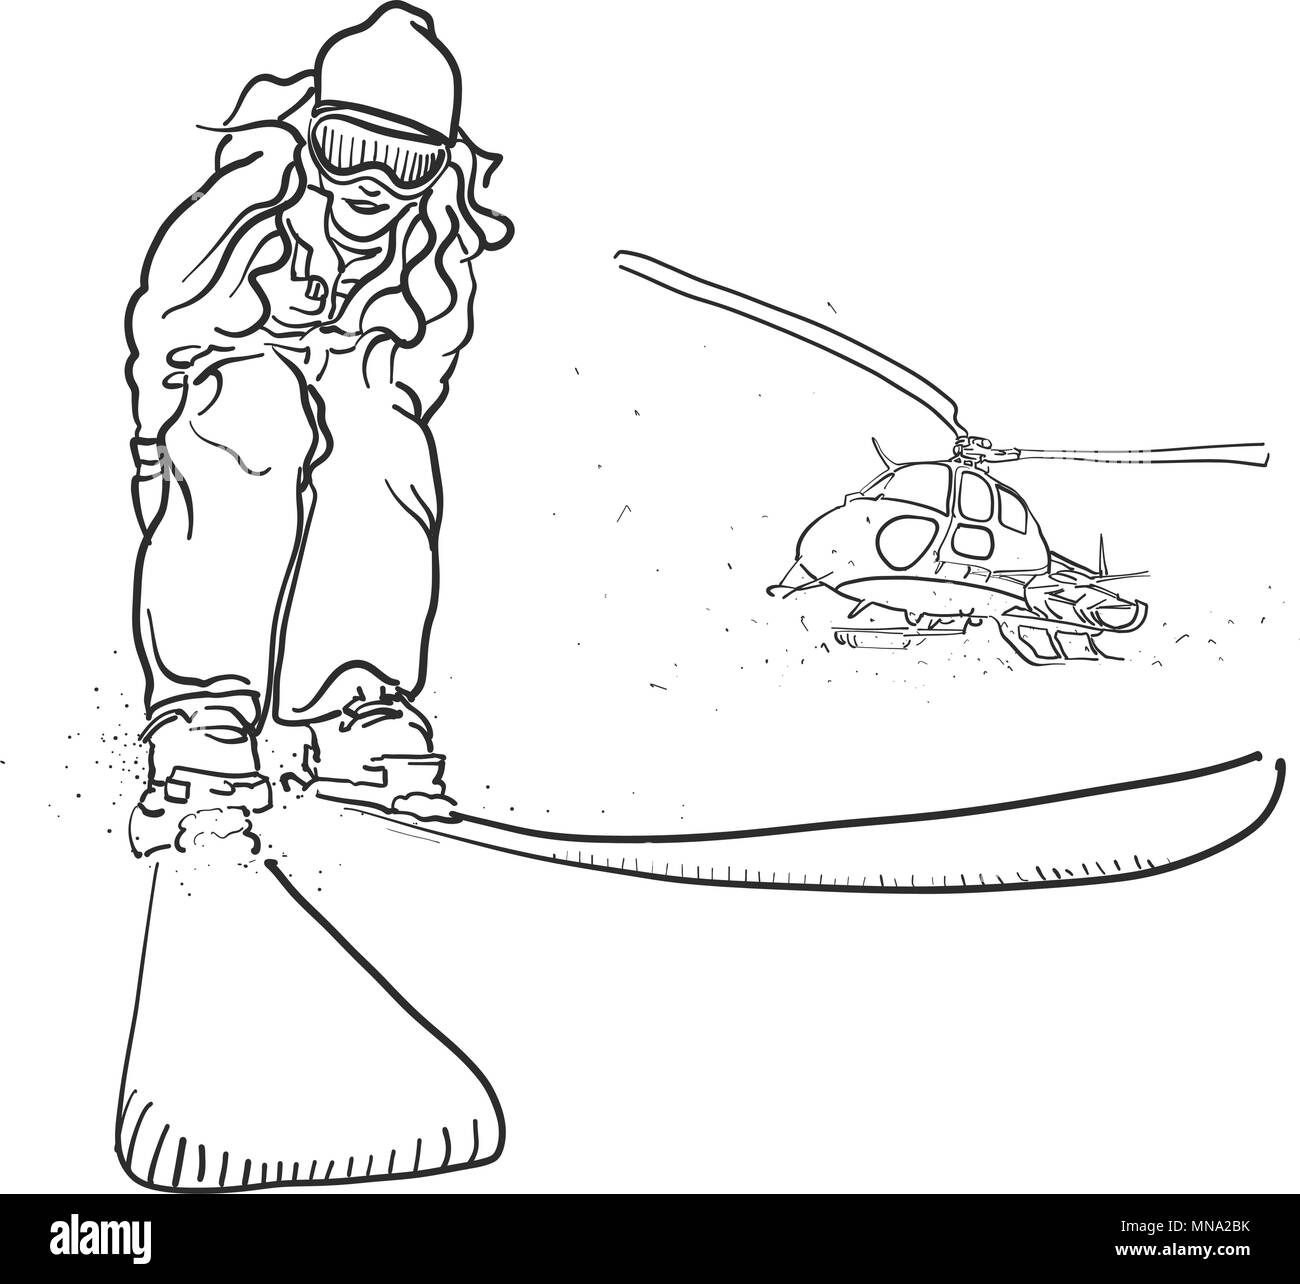 Ski alpin et d'Hélicoptère, croquis Doodle Vecteur Contours dessinés à la main, Artwork Illustration de Vecteur